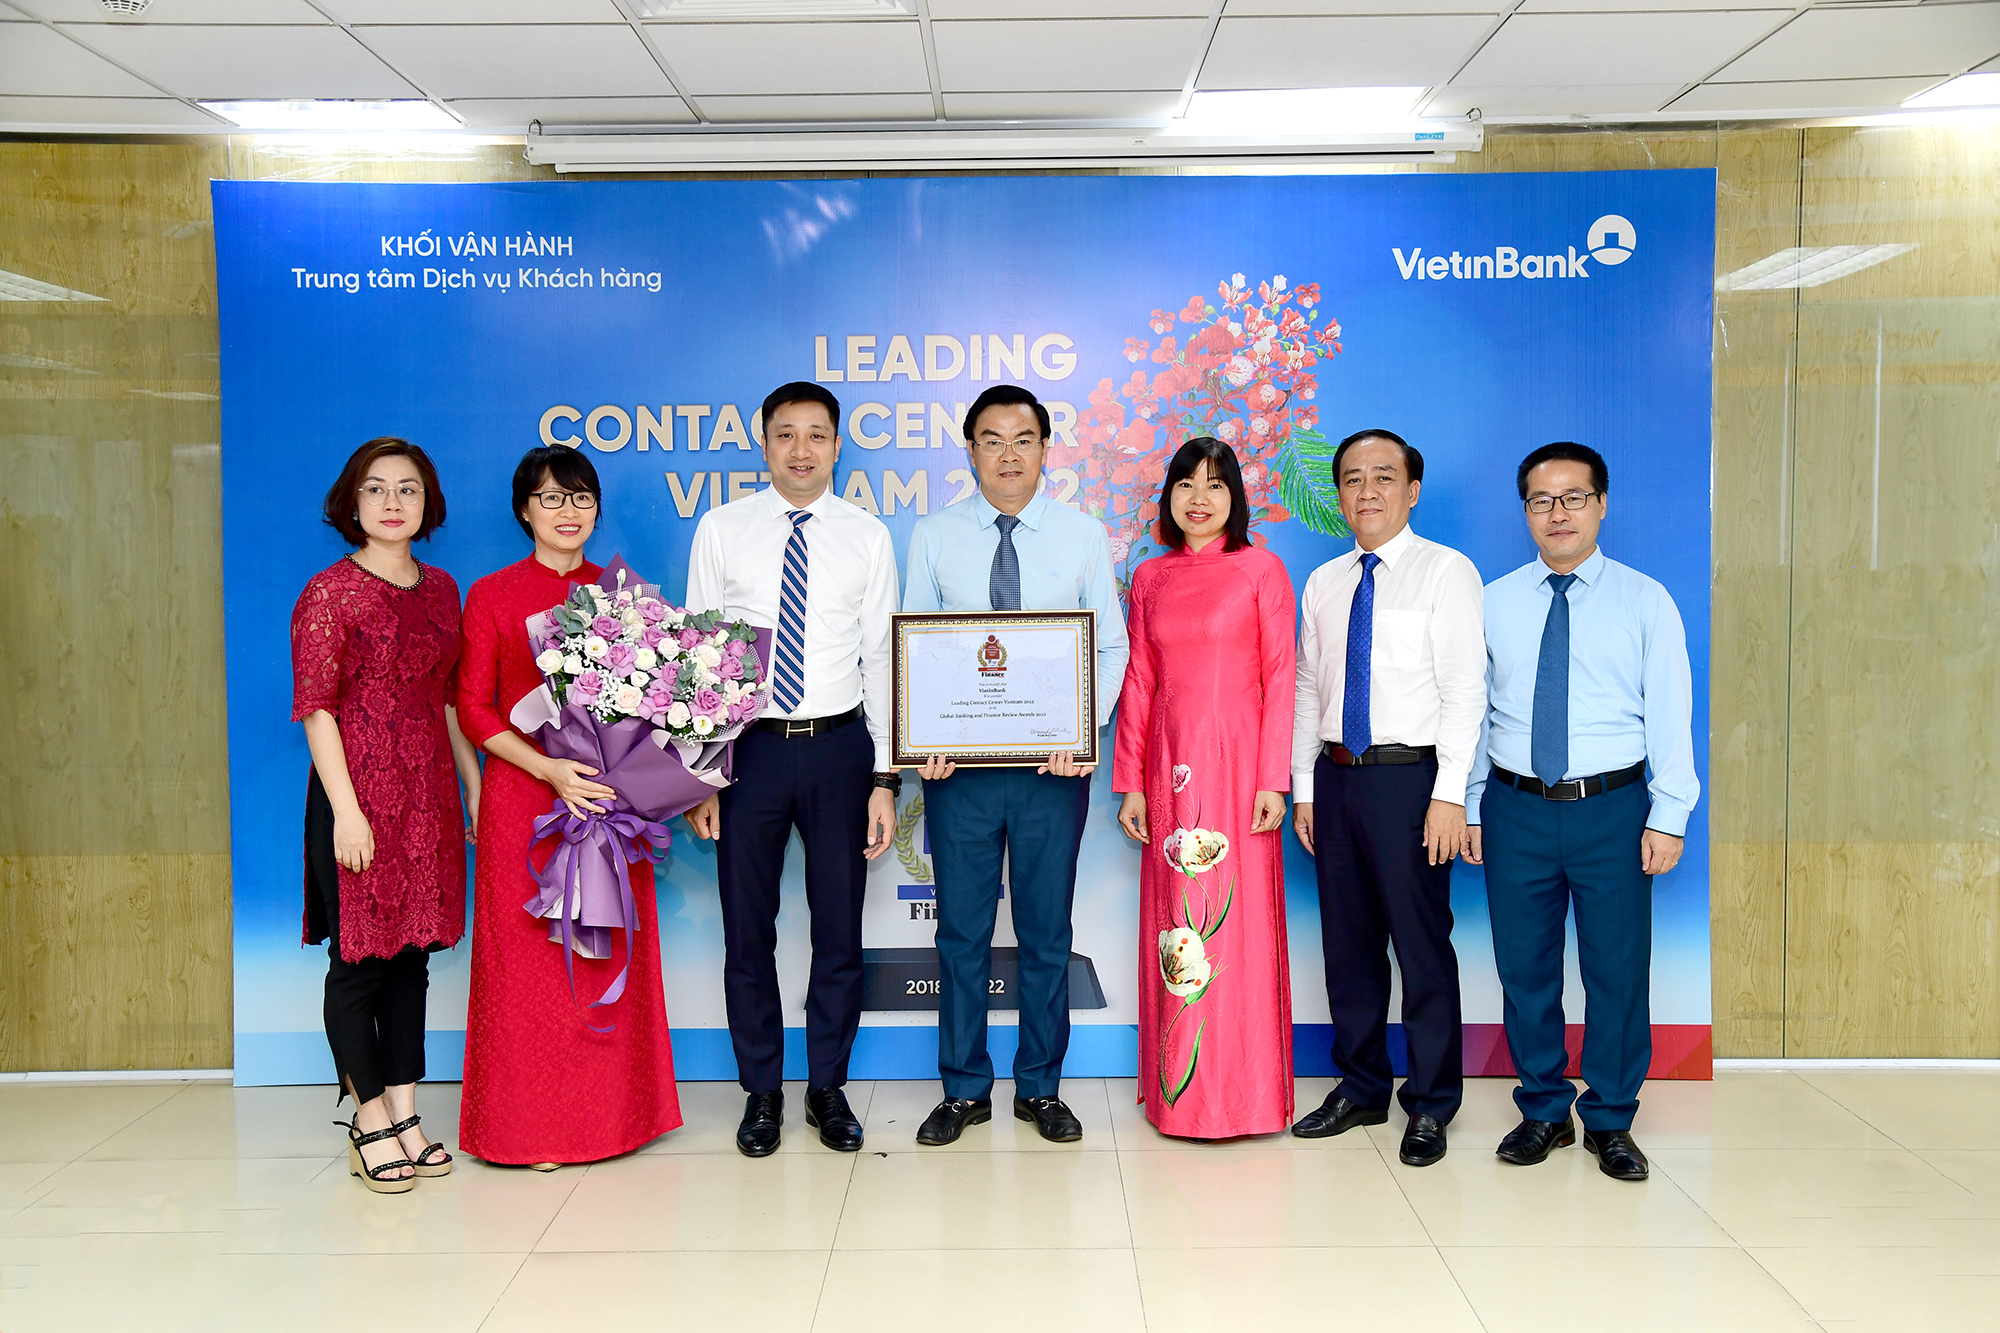 5 năm liên tiếp, VietinBank giữ vững vị thế dẫn đầu trong ngành chăm sóc khách hàng - Ảnh 2.